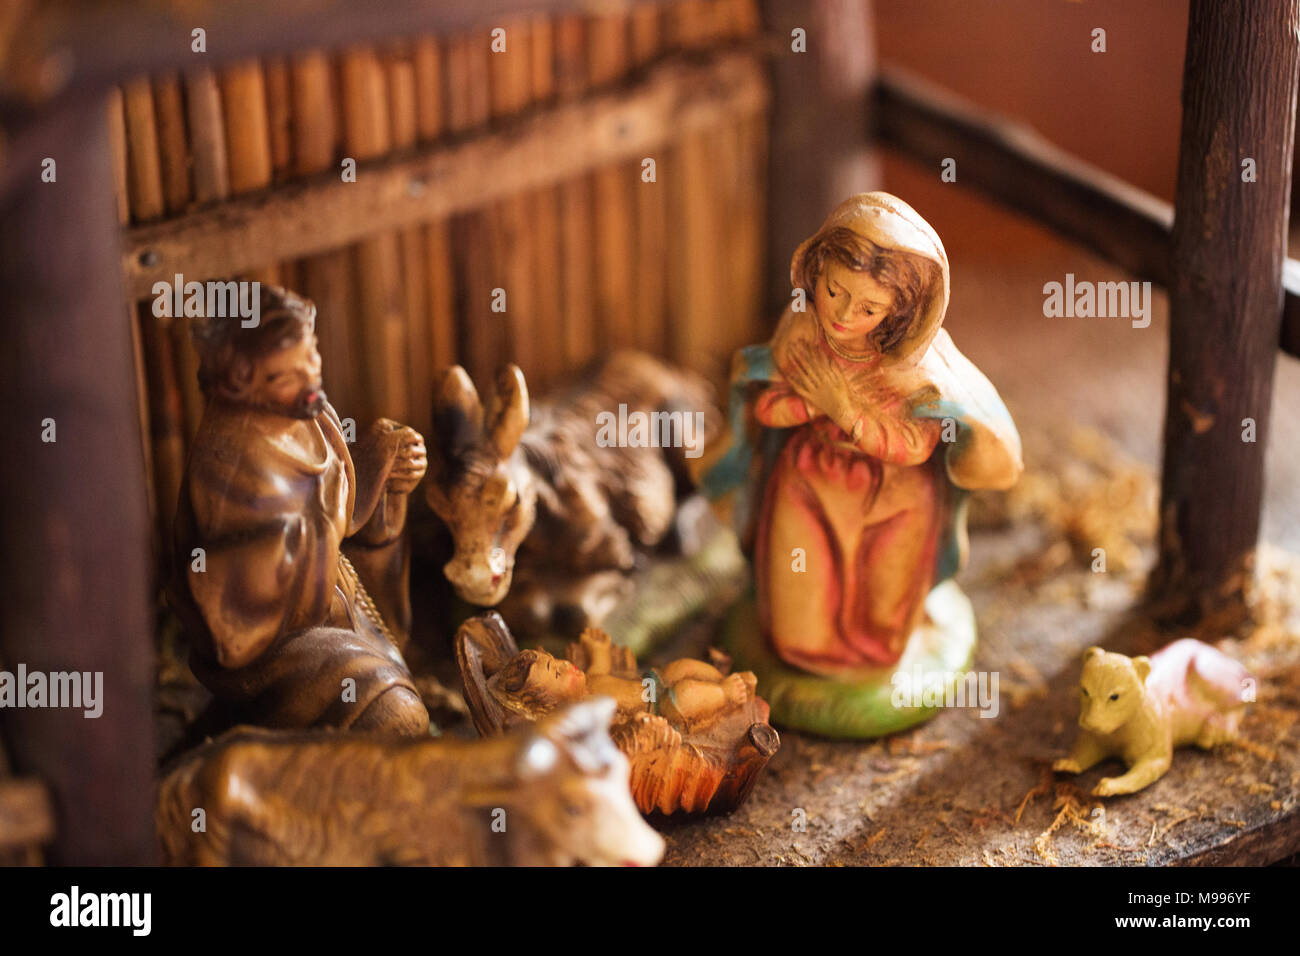 Un antico porcellana dipinta scena della Natività (creche) con Maria e Giuseppe e il Bambino Gesù nel presepe, all'interno di una stalla in legno. Foto Stock